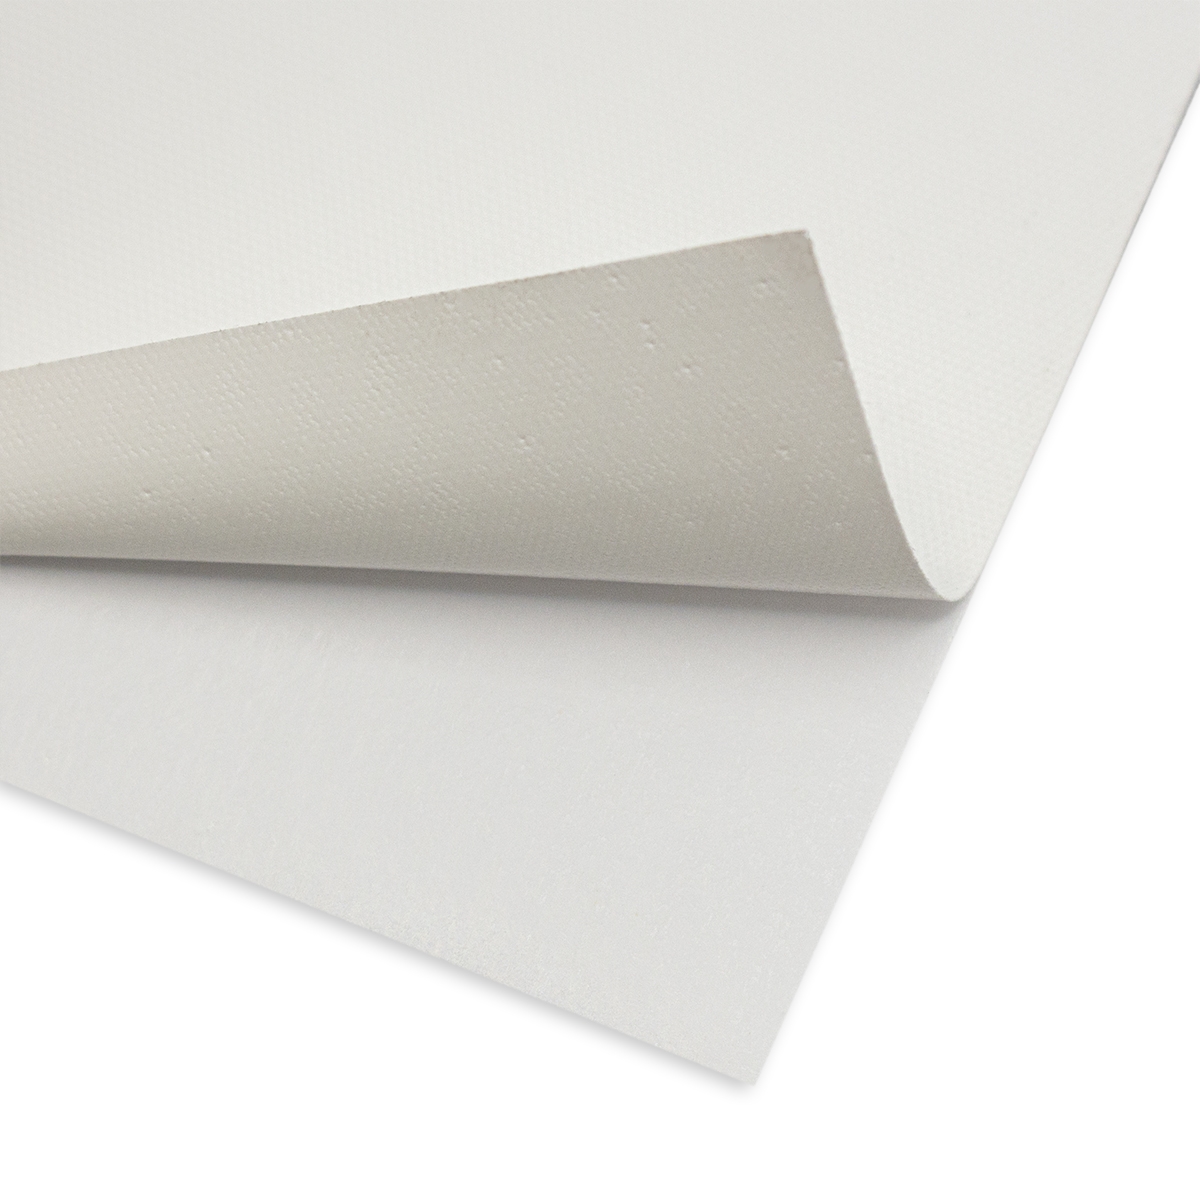 Foam Core Board - 1 sheet (4' x 8')